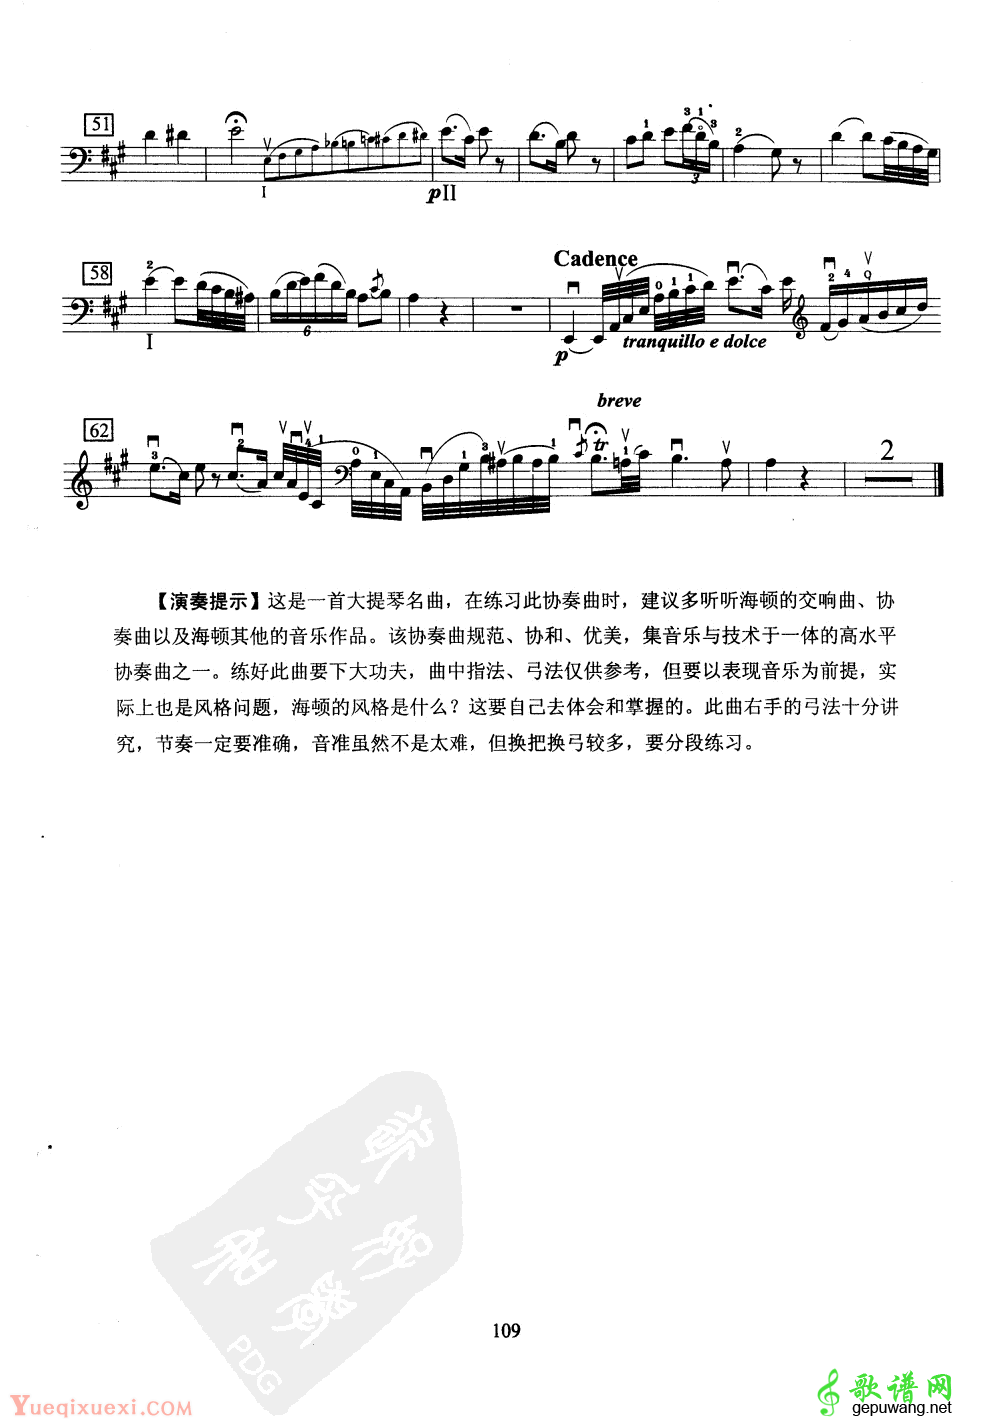 大提琴第十级乐曲练习谱(5) -